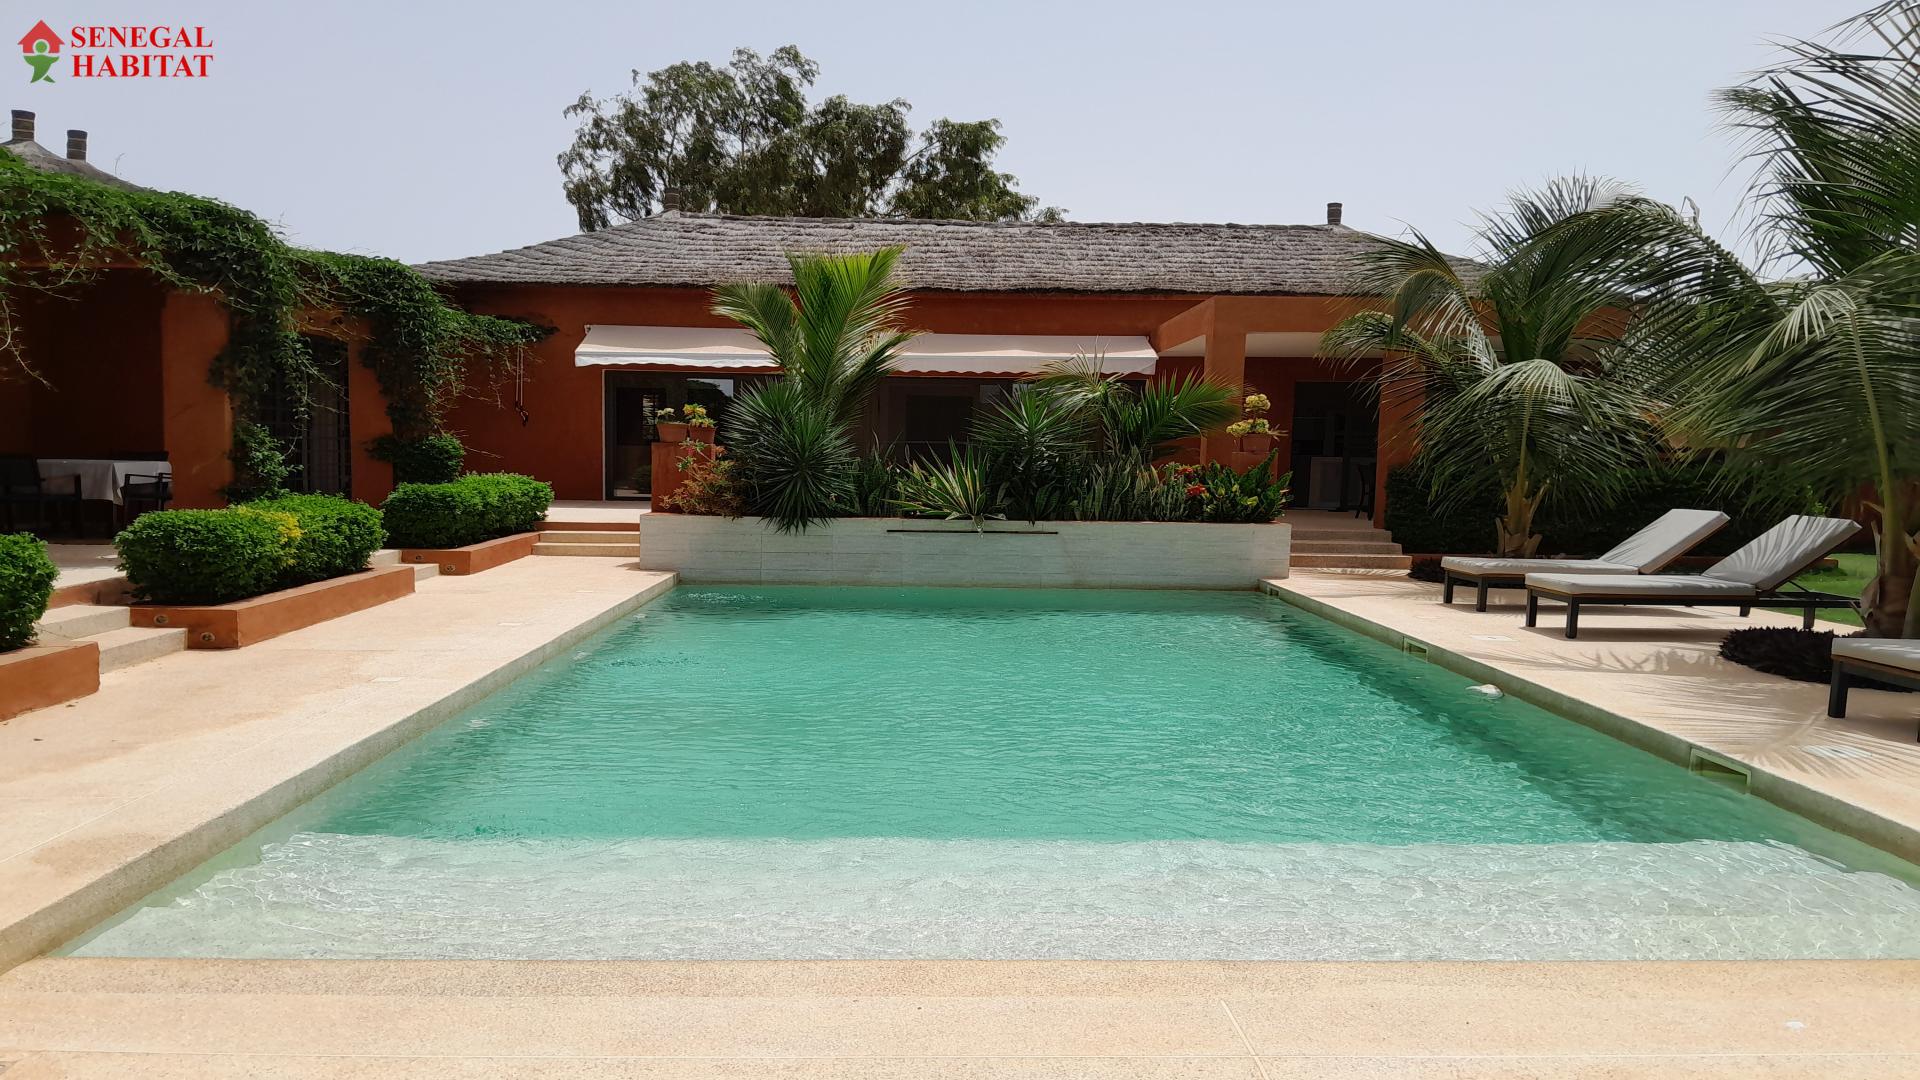 villa de qualit  type riad sur 1000 m2  de terrain  4 chambres 4 salles d'eau belles prestations piscine  ngaparou proche route